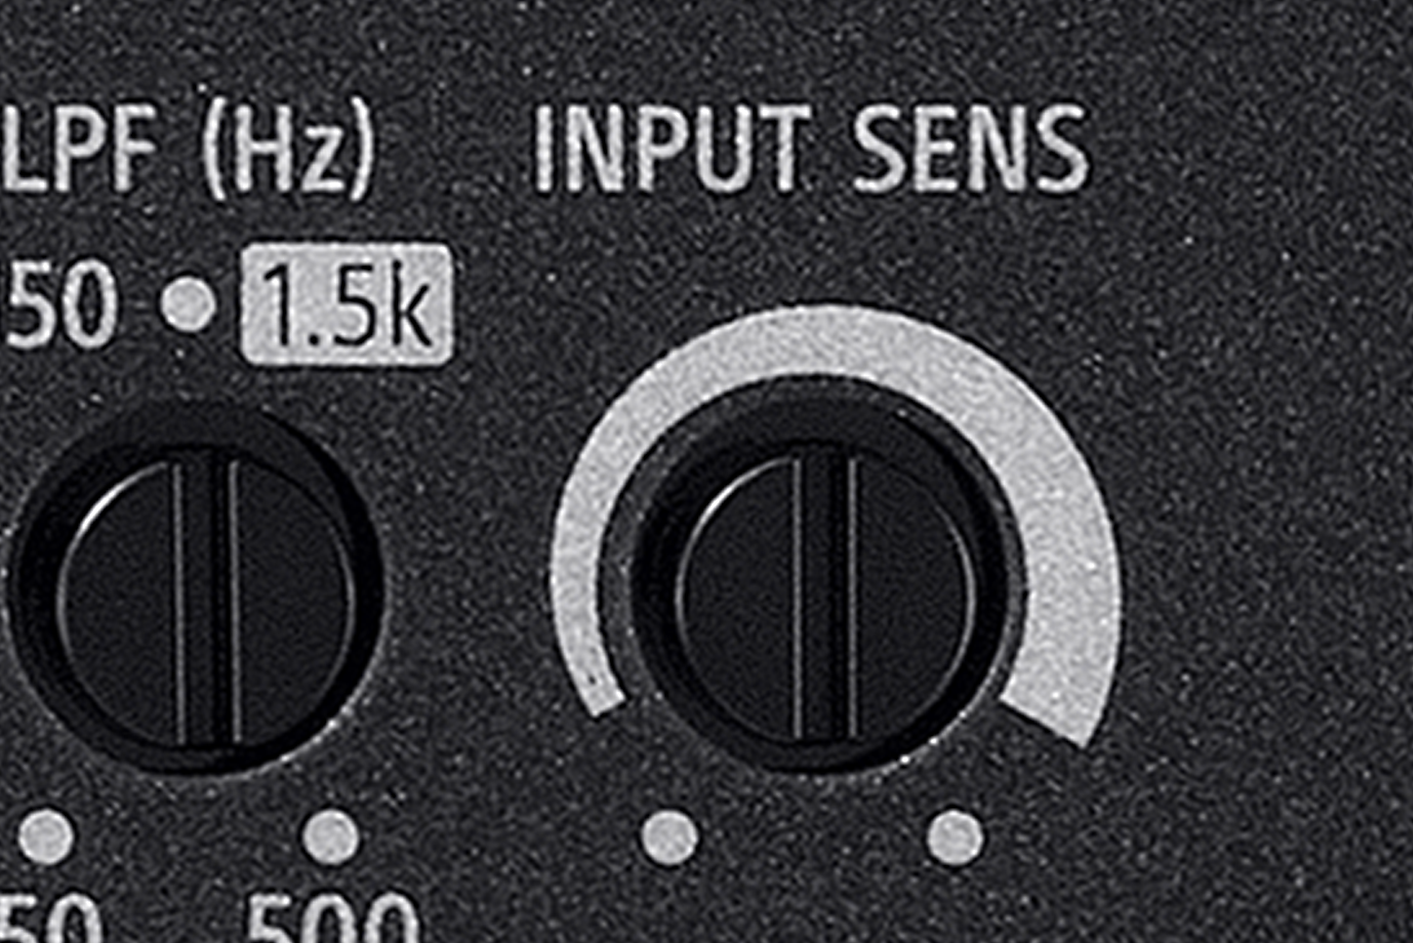 Close up image of LPF (Hz) and Input Sens dials